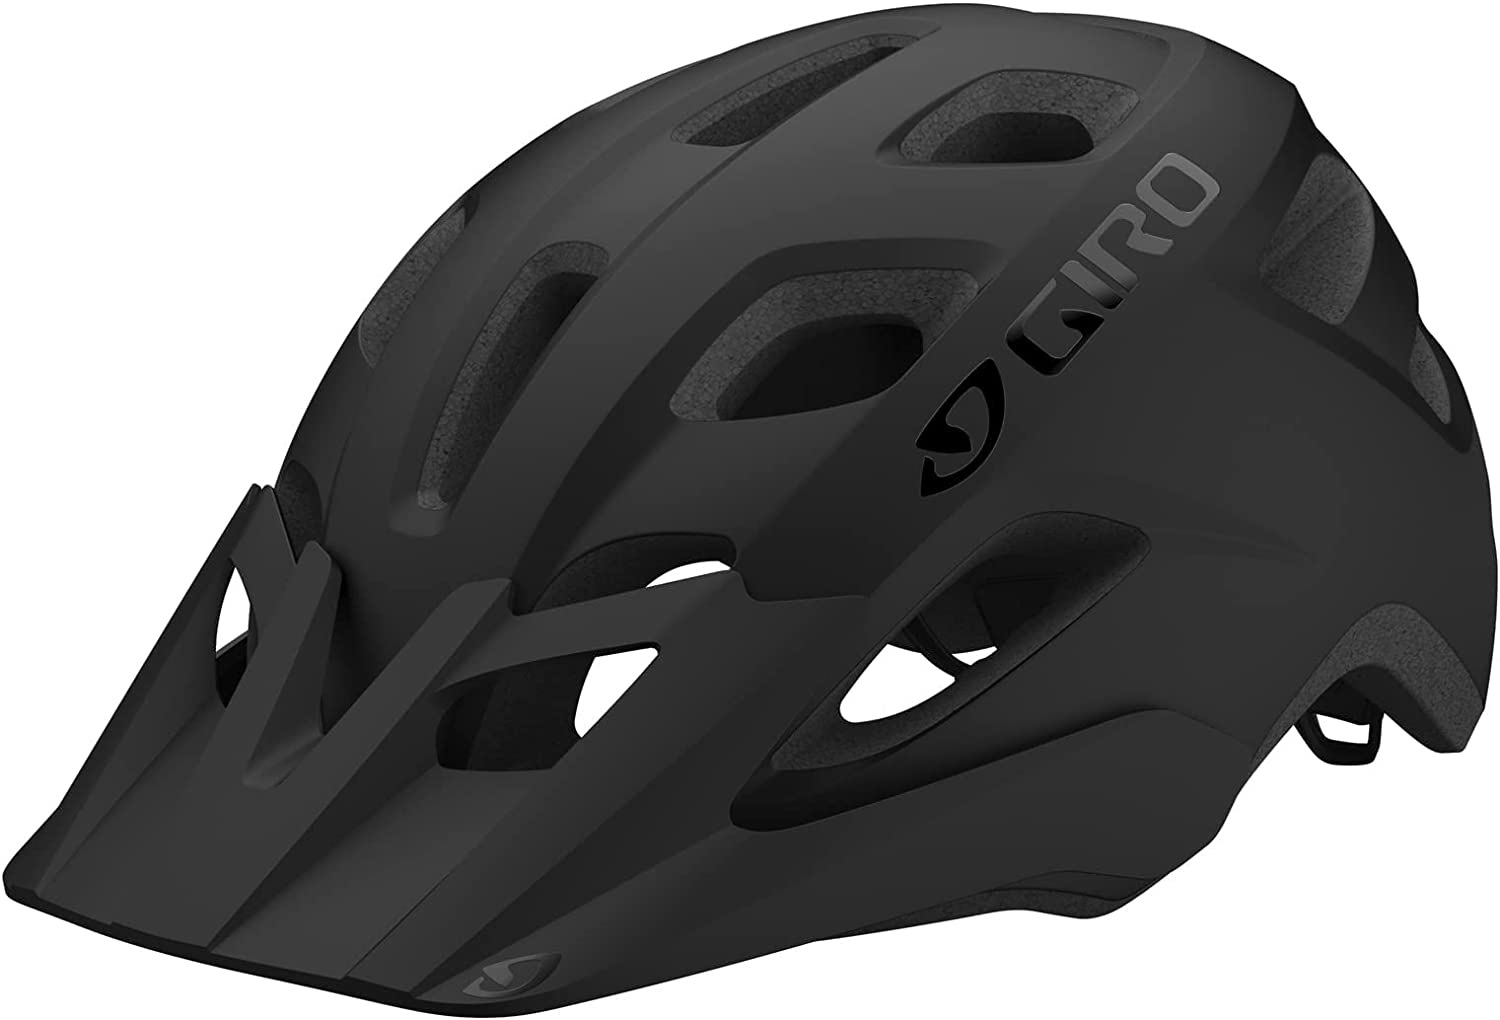 Best eBike Helmet for Adults: #2 - Giro Fixture MIPS Helmet